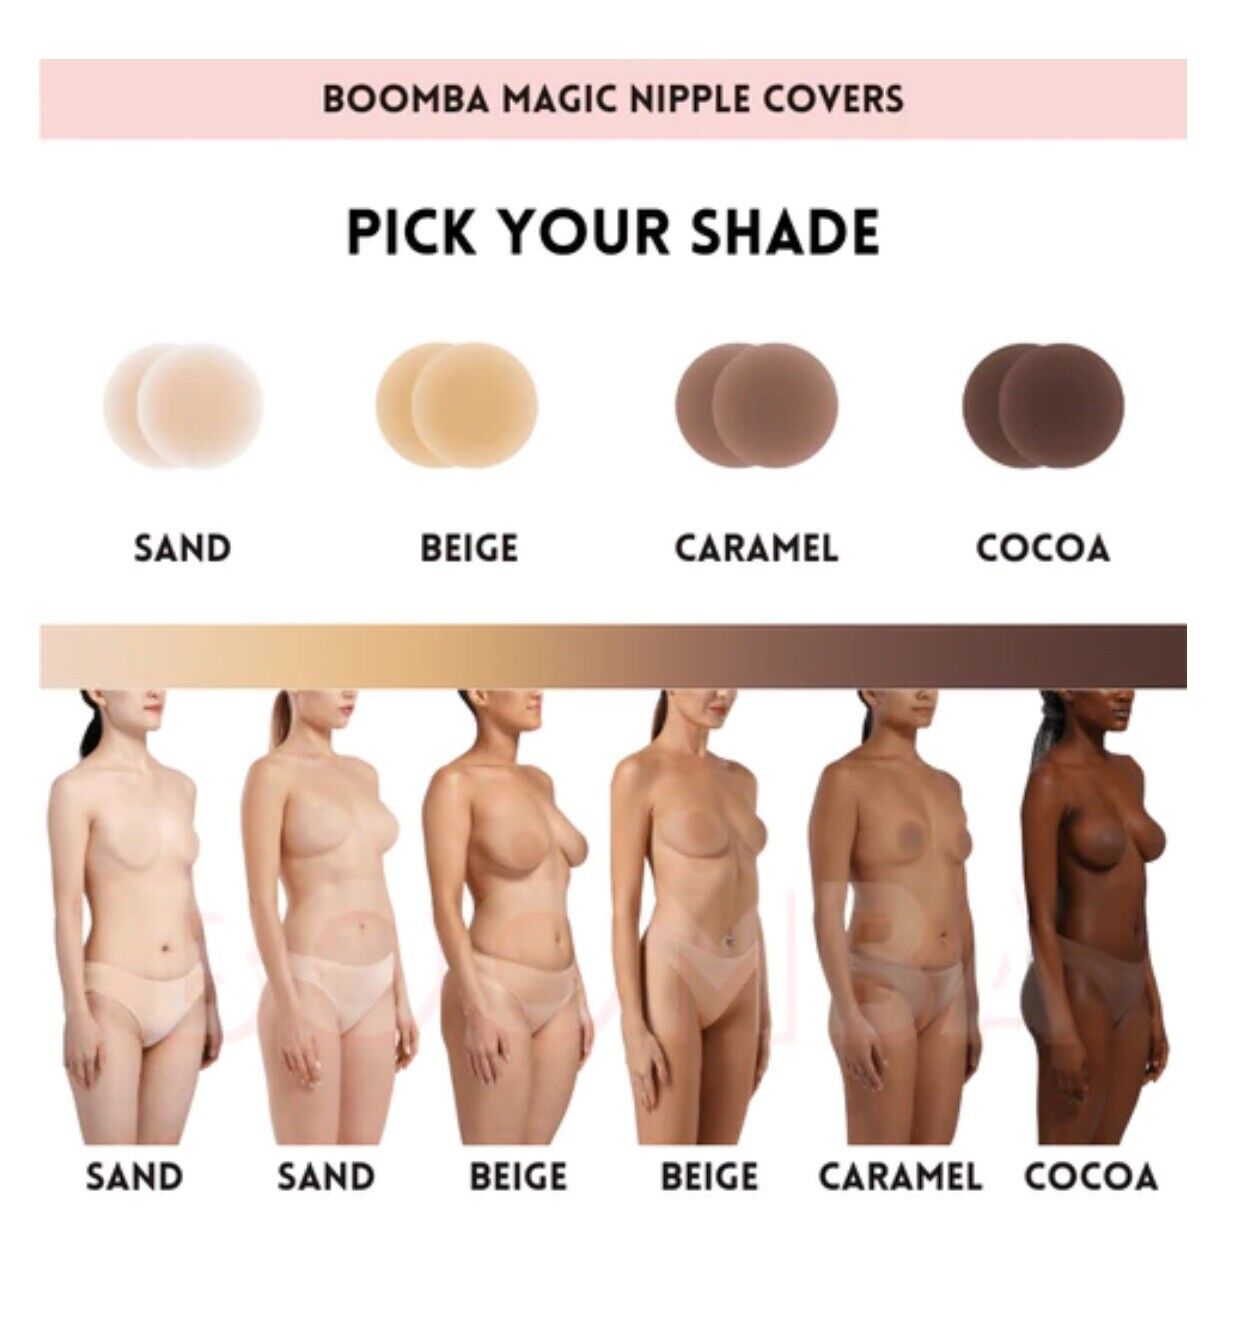 Cocoa Magic Nipple Covers